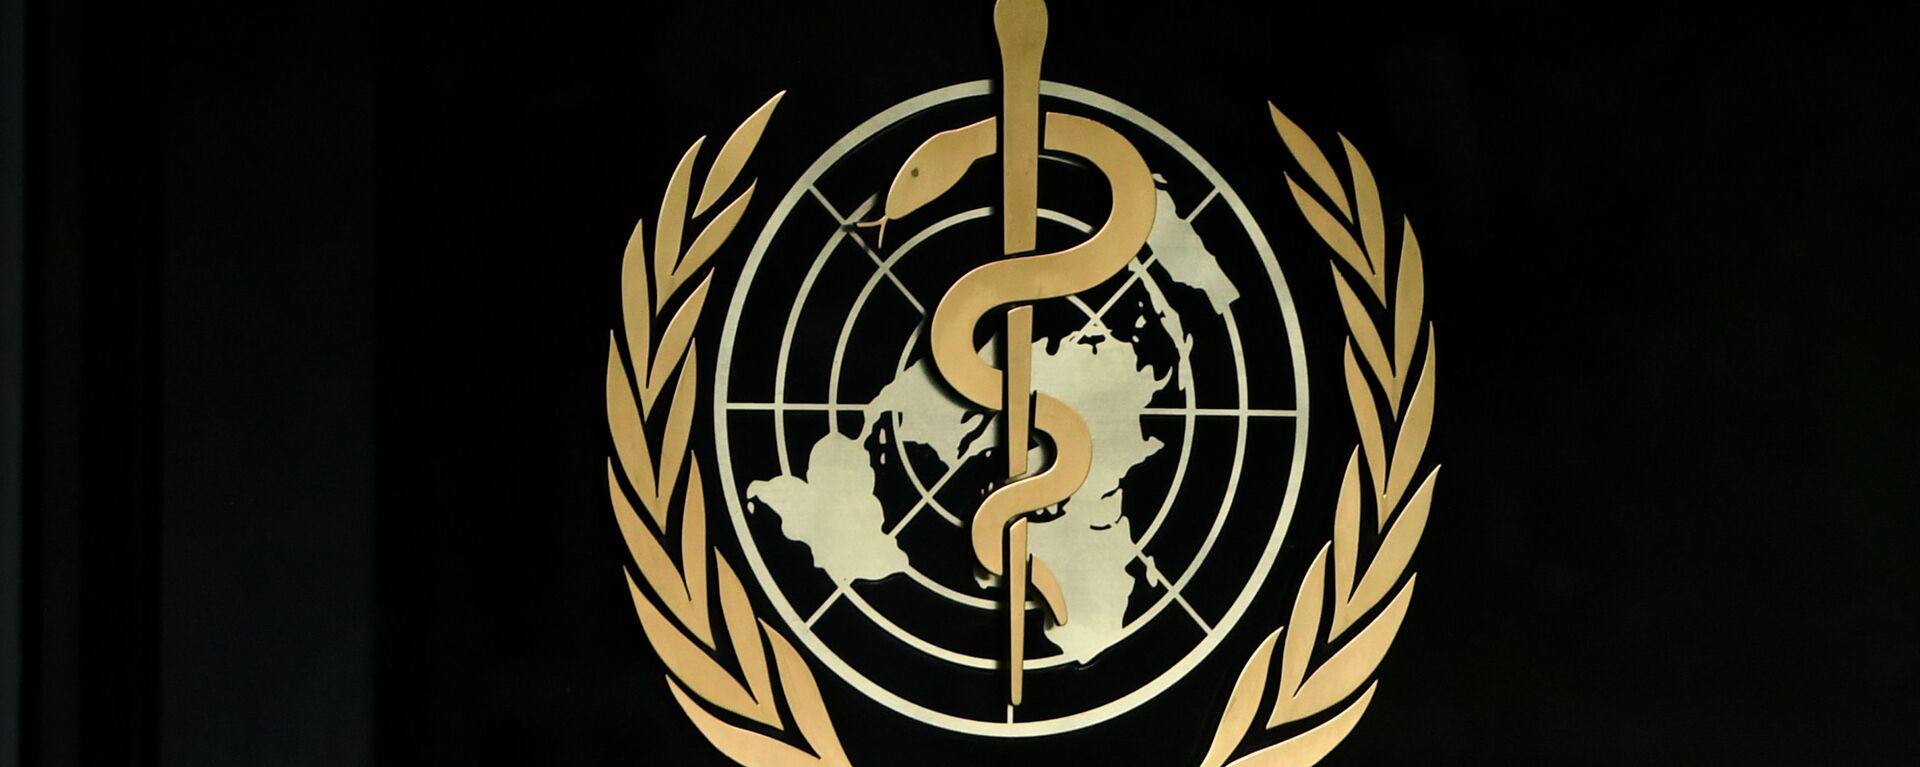 Штаб-квартира Всемирной организации здравоохранении в Женеве. Архивное фото - Sputnik Кыргызстан, 1920, 16.04.2021